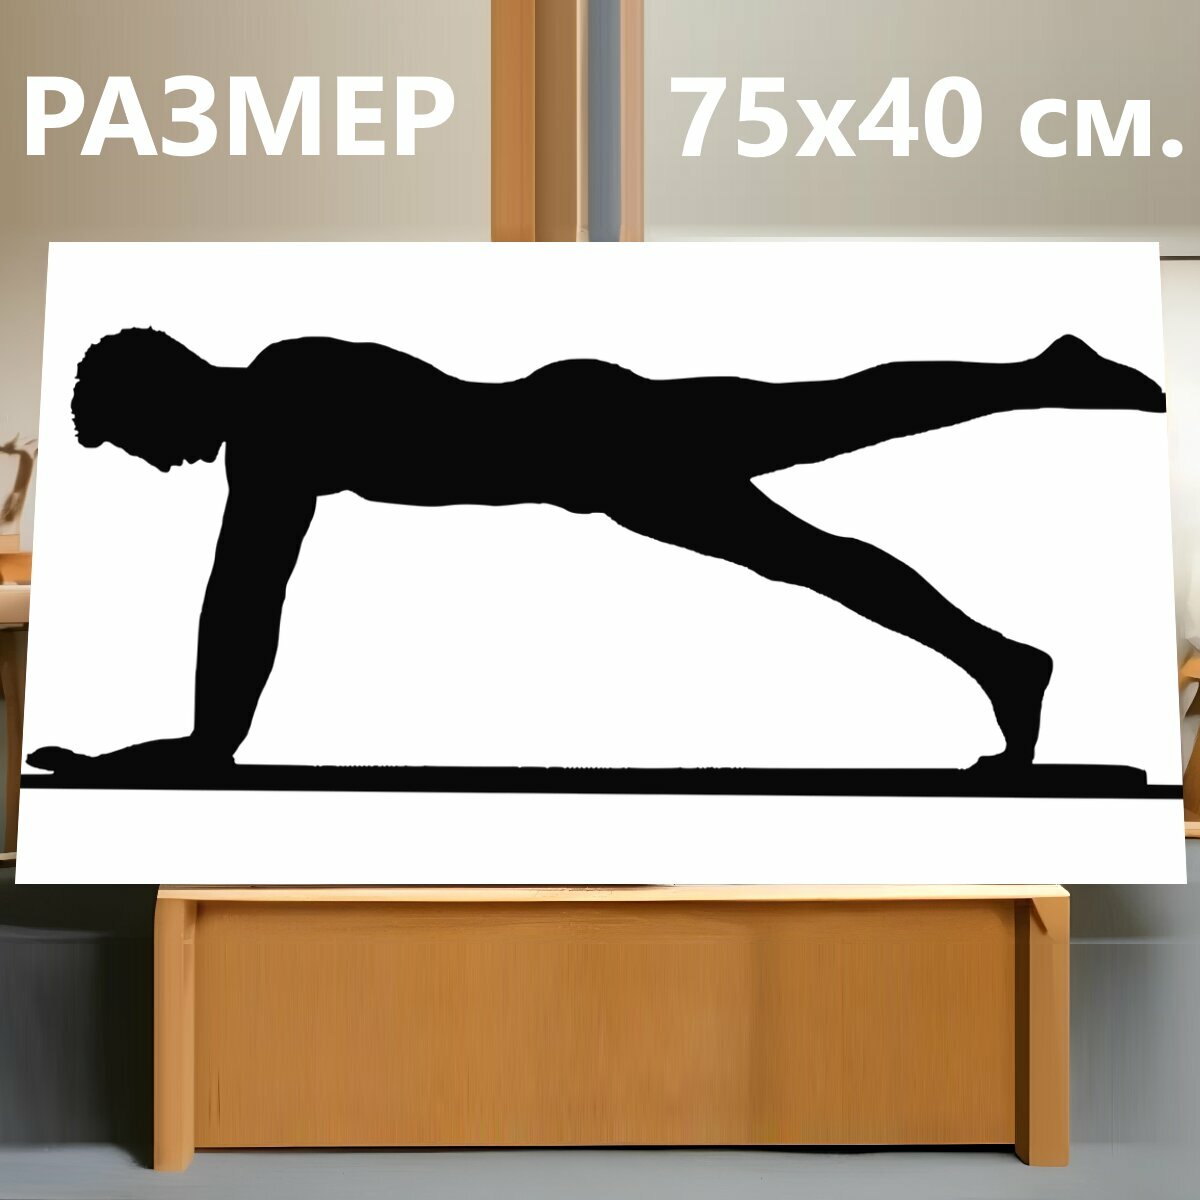 Картина на холсте "Силуэт, фитнес, упражнения" на подрамнике 75х40 см. для интерьера